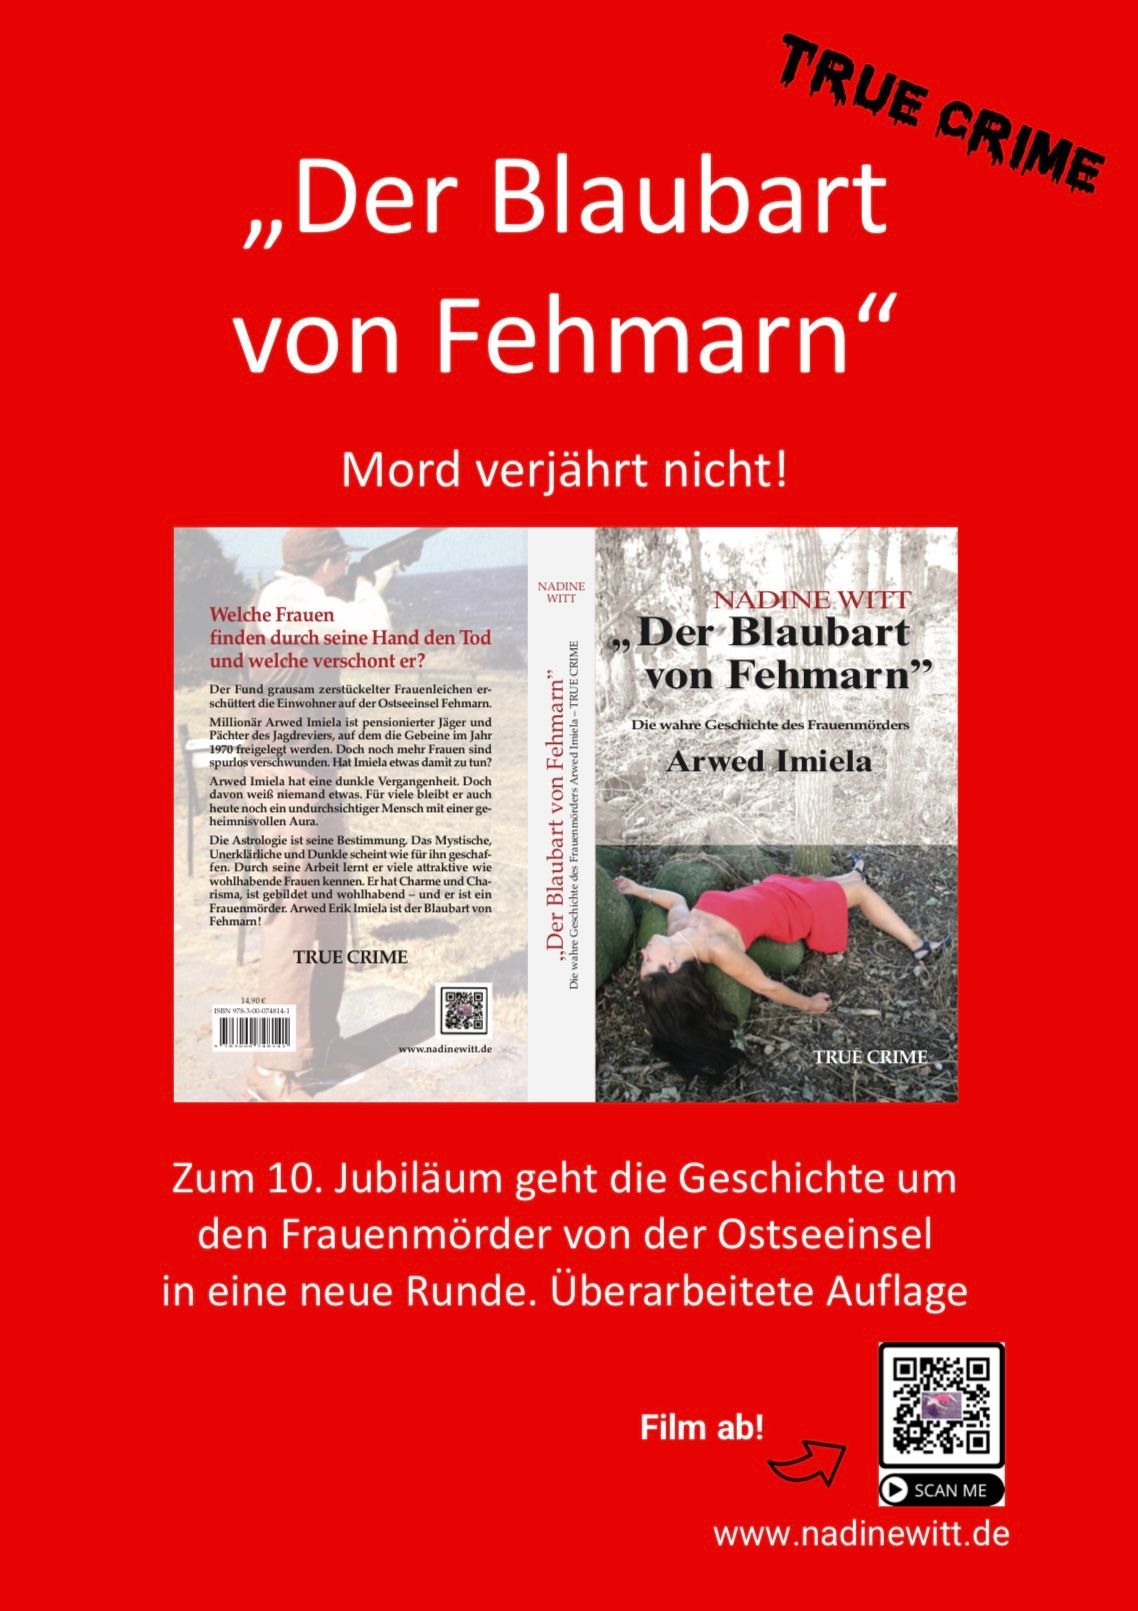 Eine neue Auflage vom Blaubart von Fehmarn ist wieder verfügbar. True Crime von Nadine Witt. Der Ostseemörder von Fehmarn. Mord verjährt nicht. 